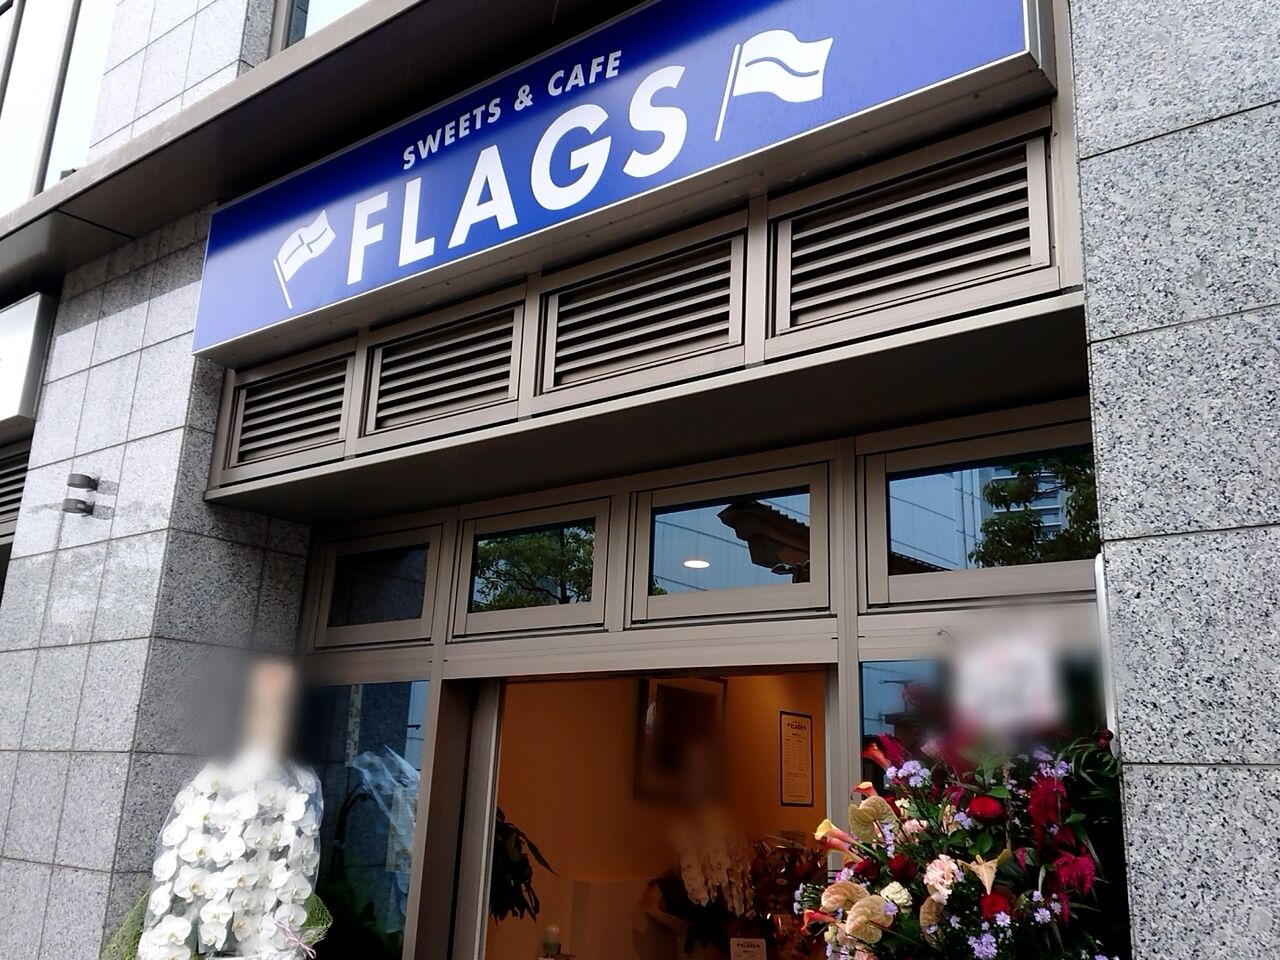 馬場通りにスイーツ カフェ Flags フラッグス がオープンしてる うつのみや通信 栃木県宇都宮市の地域情報サイト